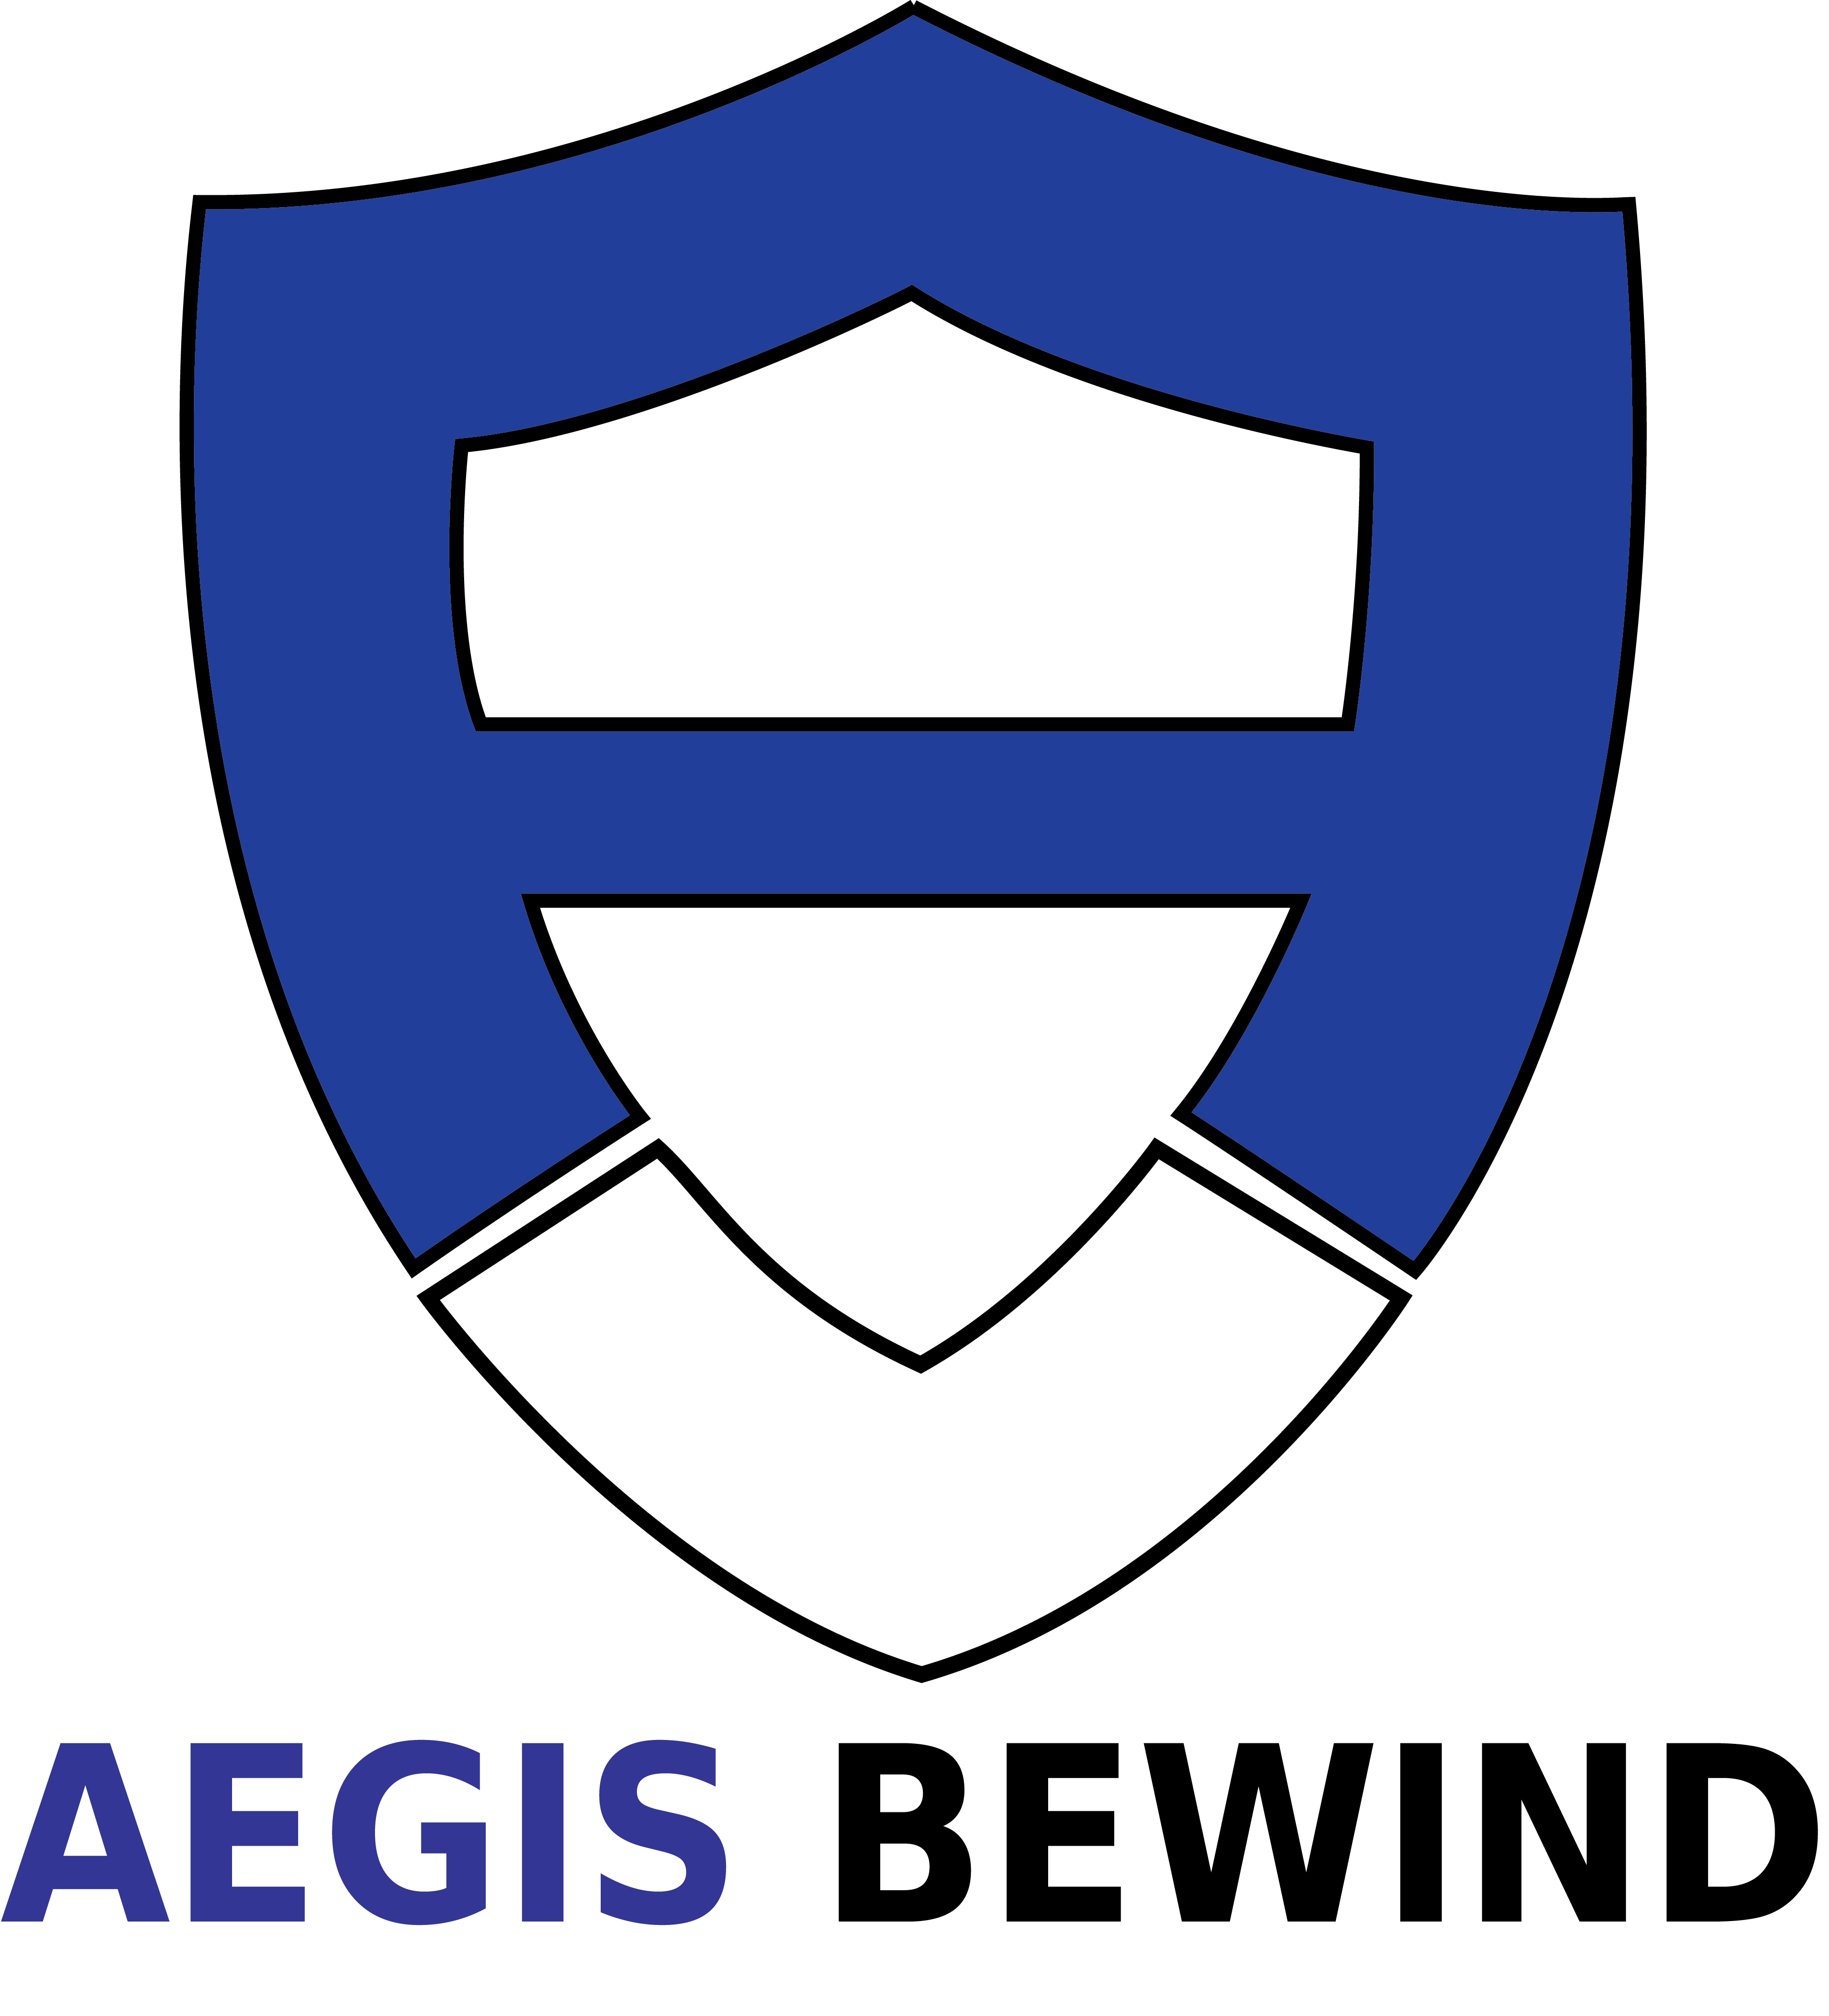 Aegis bewind logo